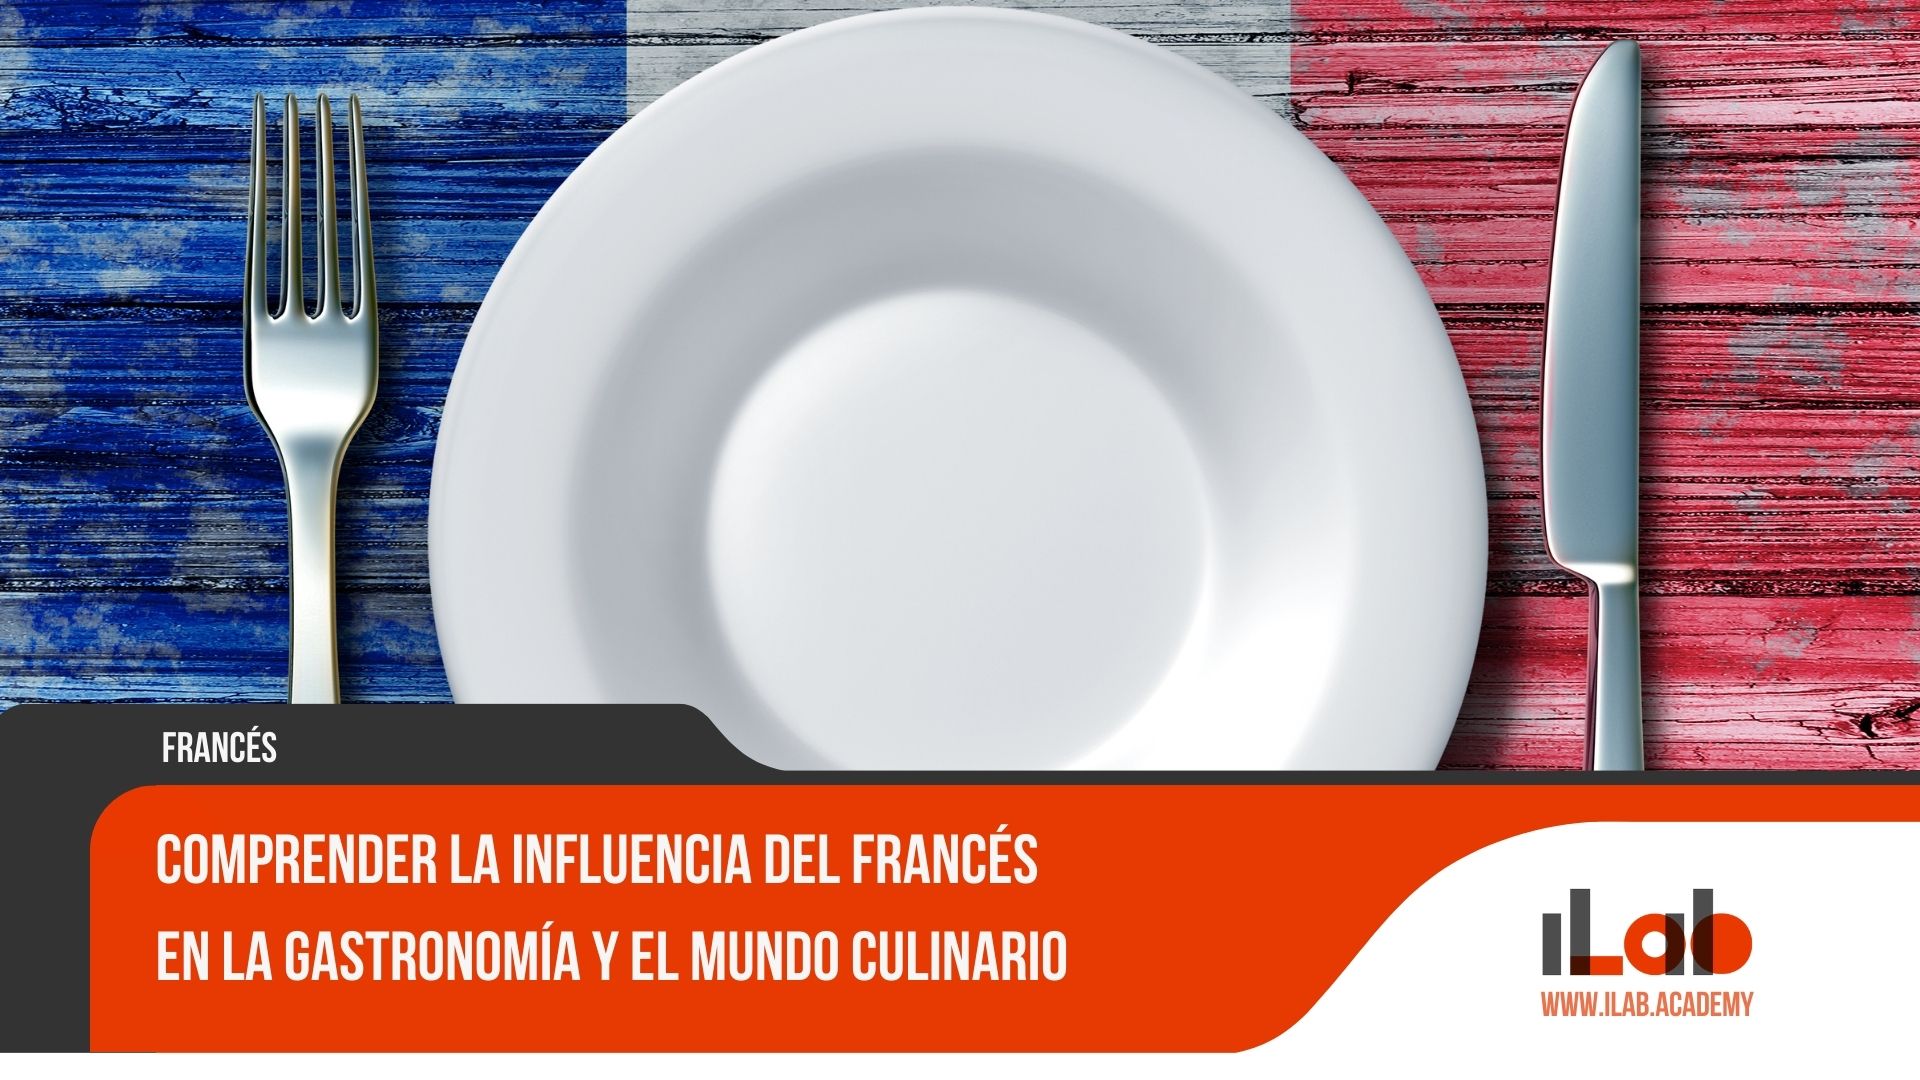 Comprender la influencia del francés en la gastronomía y el mundo culinario